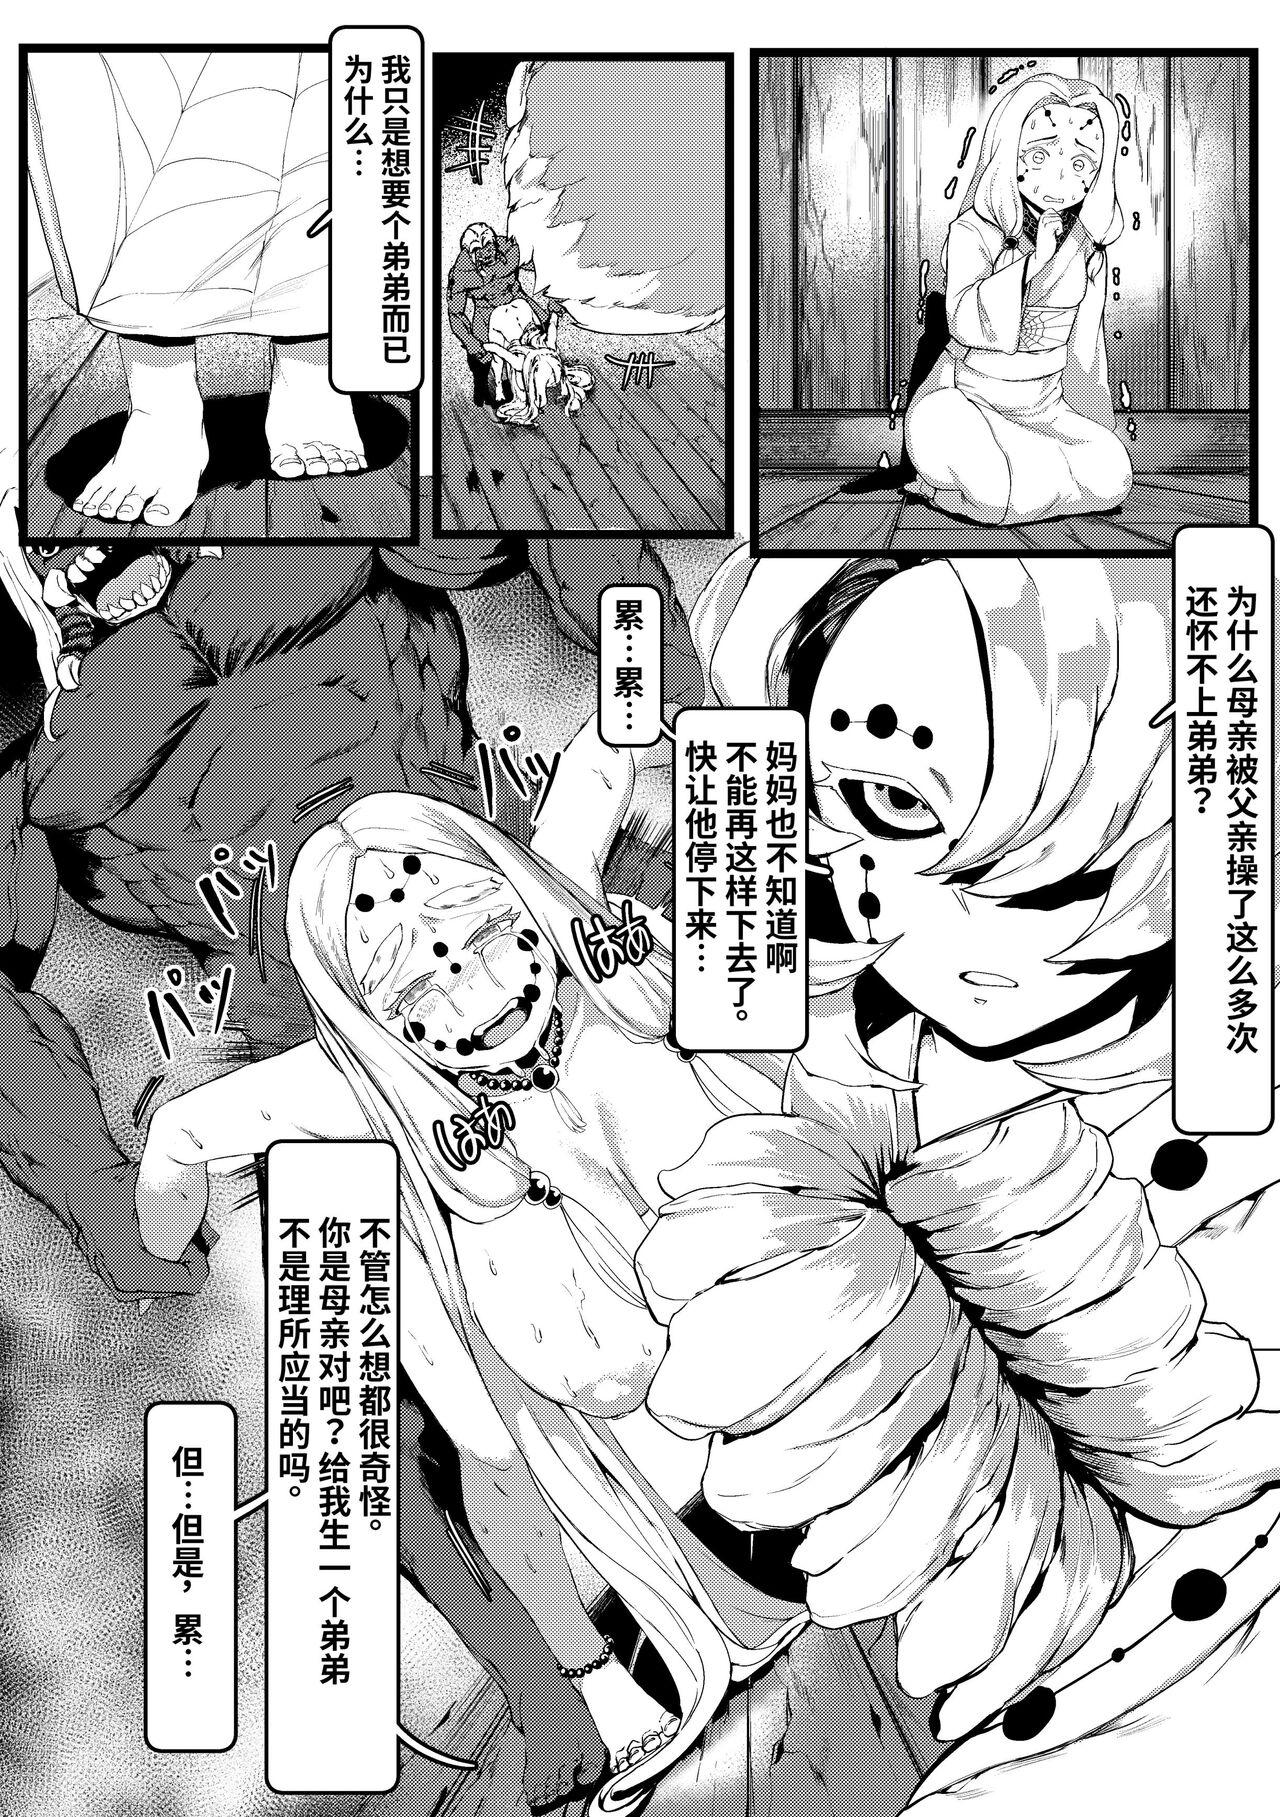 Culo Grande Spider Family - Kimetsu no yaiba | demon slayer Huge Dick - Page 4